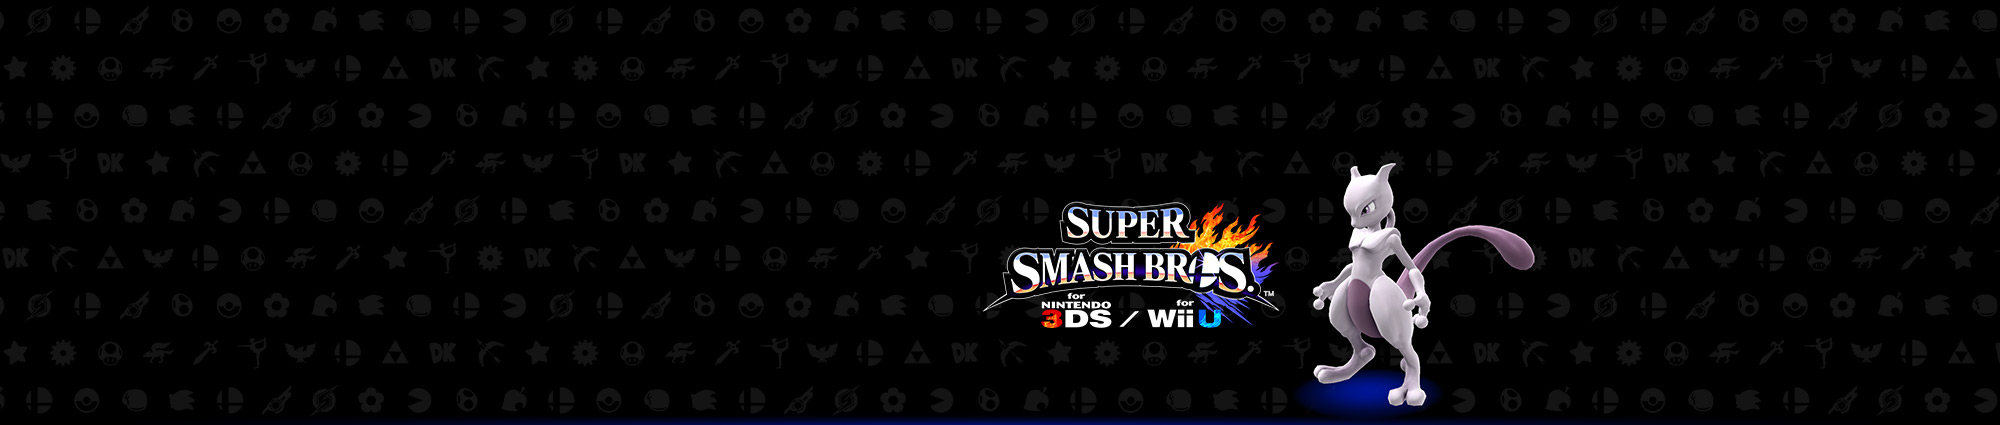 Promozione Super Smash Bros.